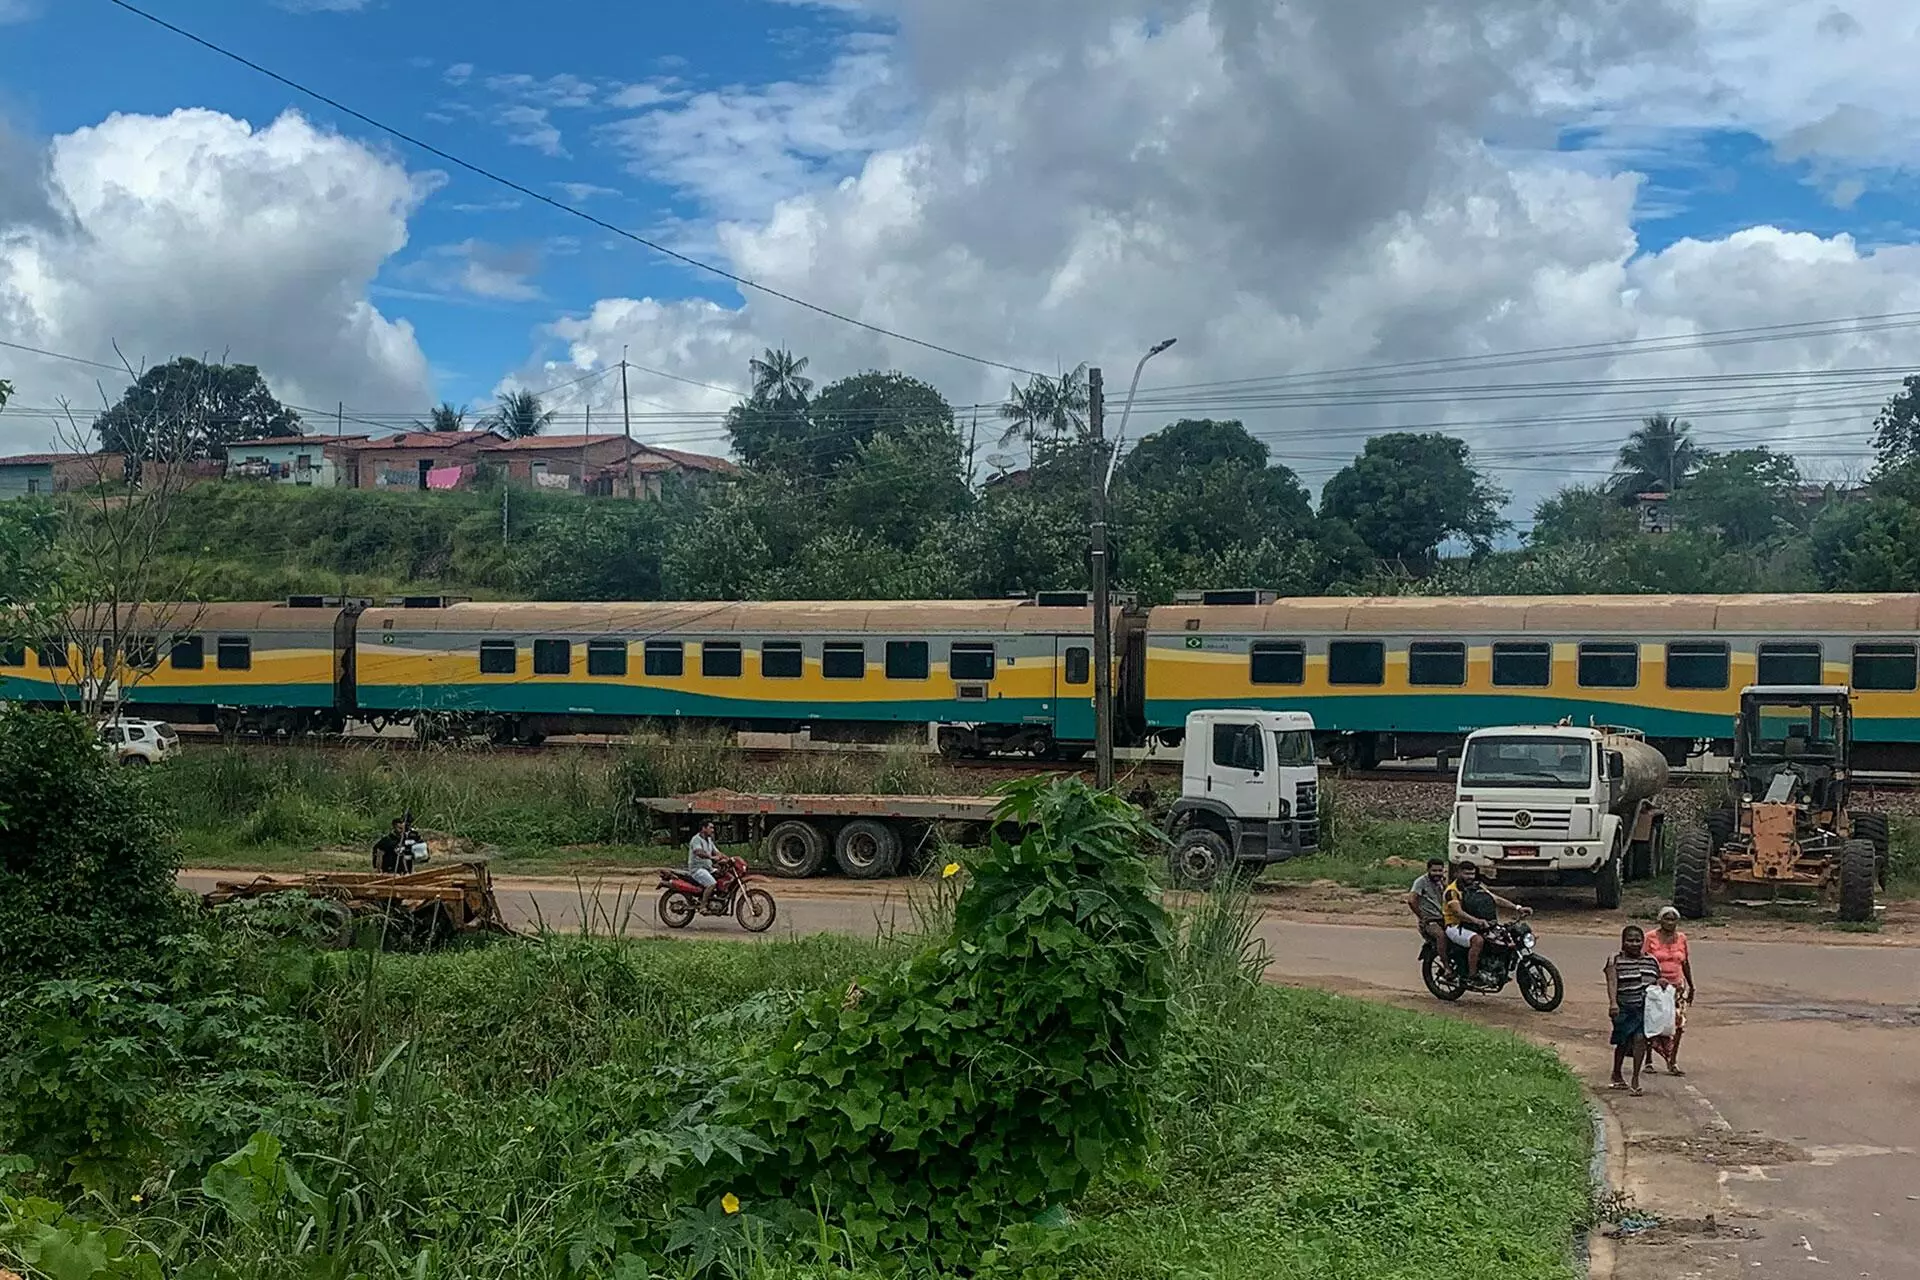 Na garganta do futuro: no Maranhão, trens da Vale prometem desenvolvimento  e entregam um rastro de violações de direitos – Observatório da Mineração